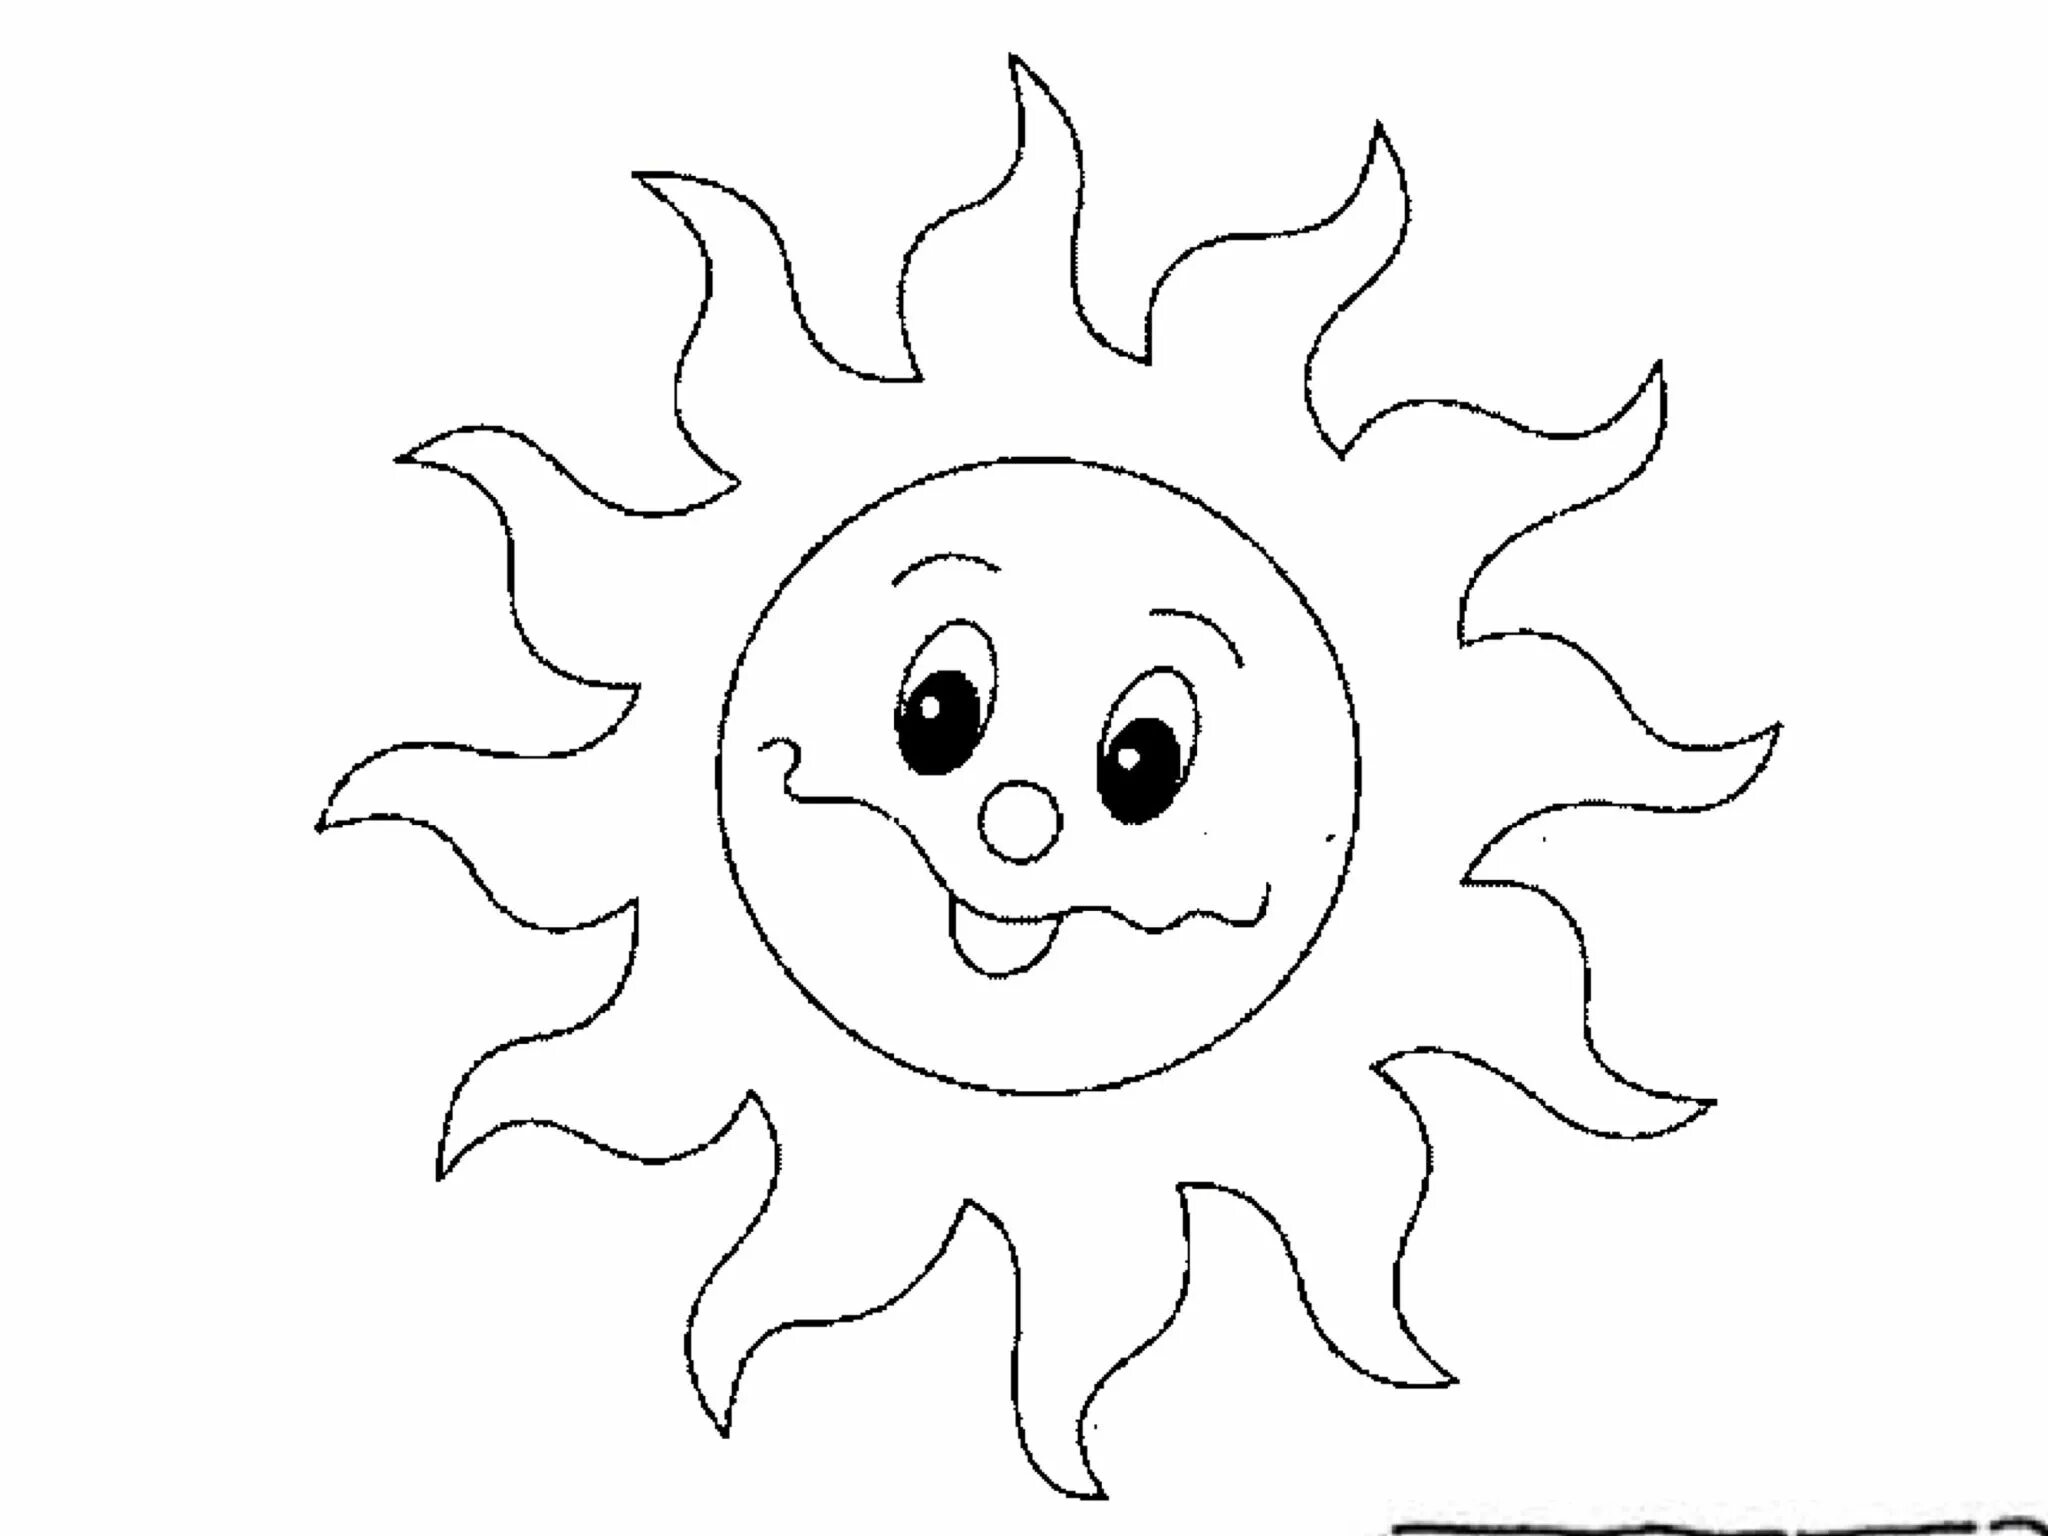 Солнце раскраска для детей